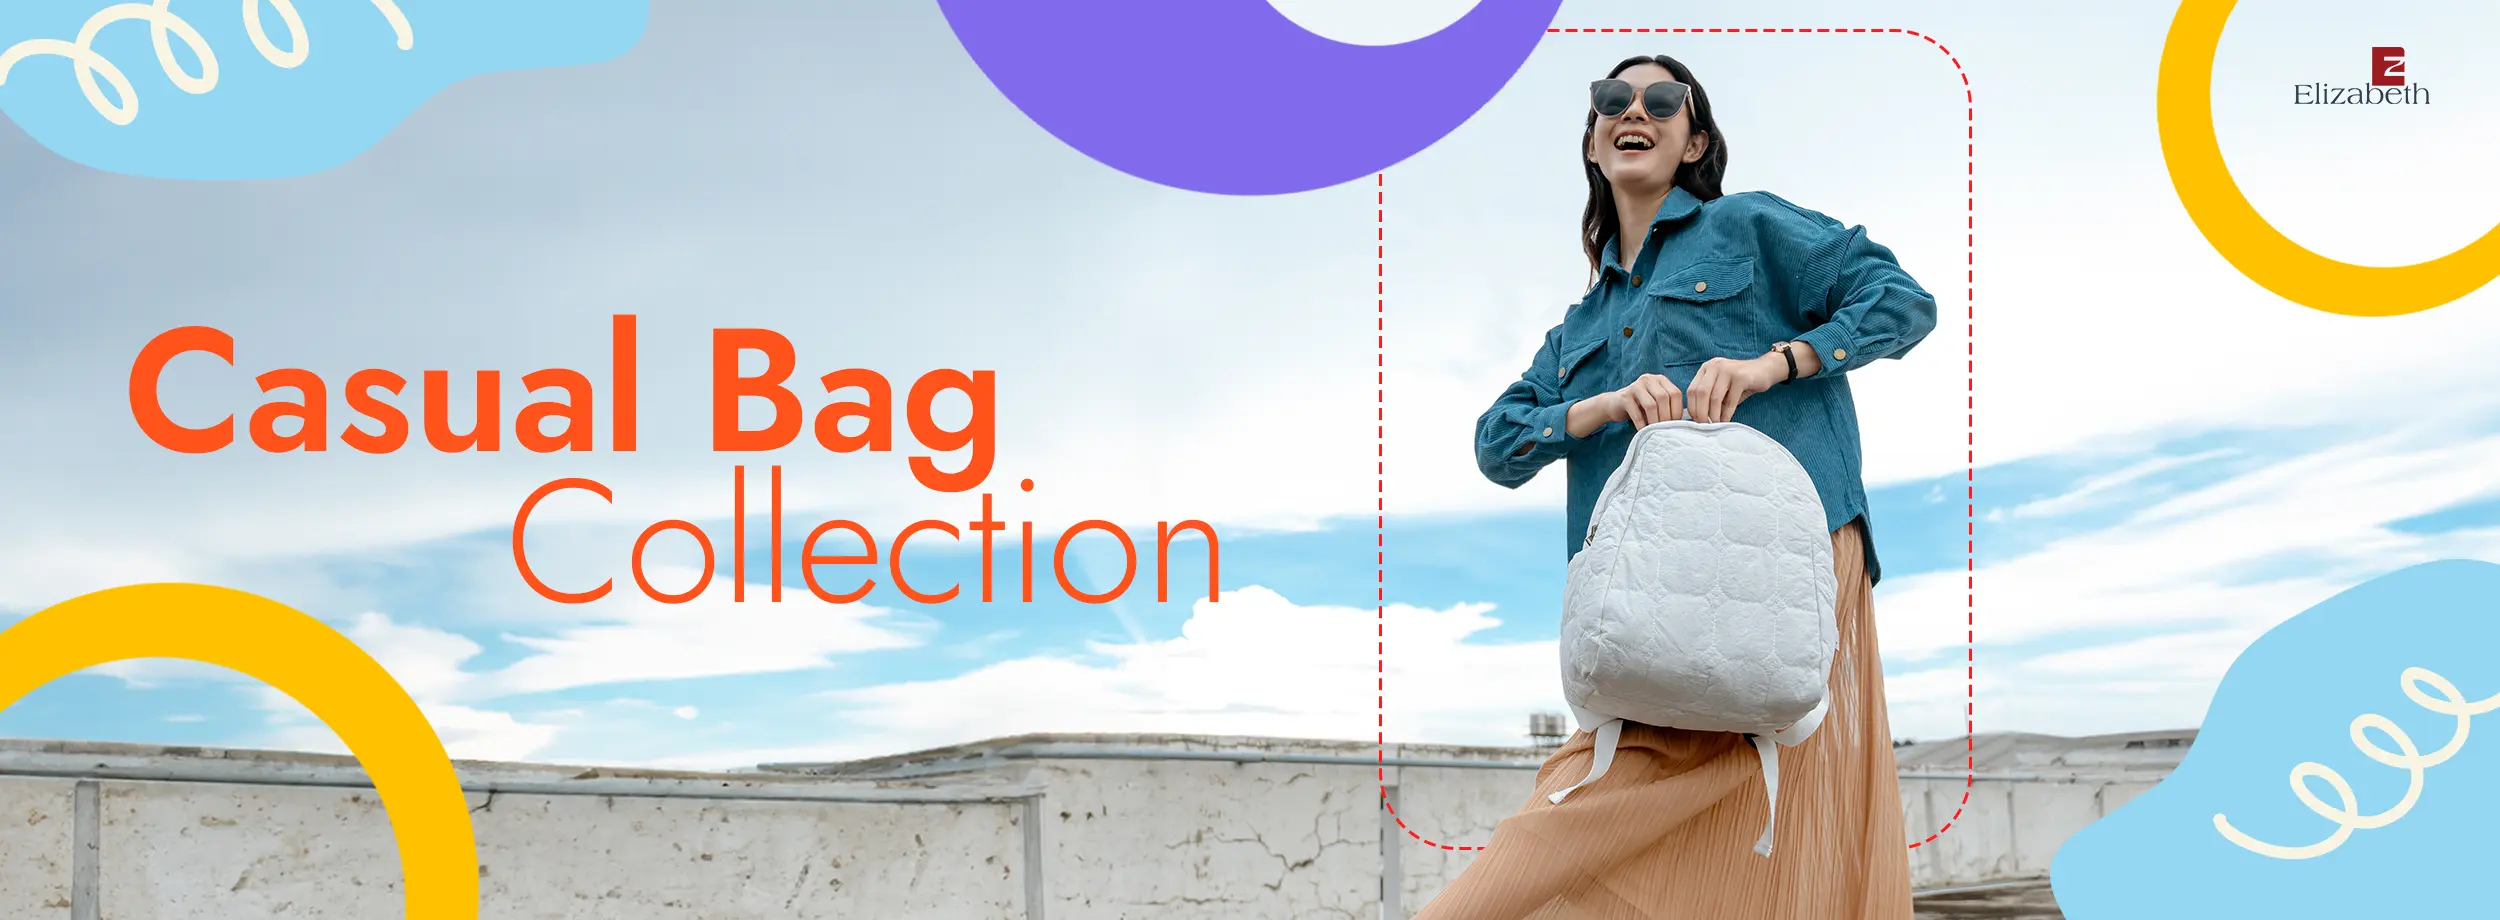 Tas tangan berwarna putih dengan logo Elizabeth. Terdapat tulisan "Casual Bag Collection". tune share more_vert